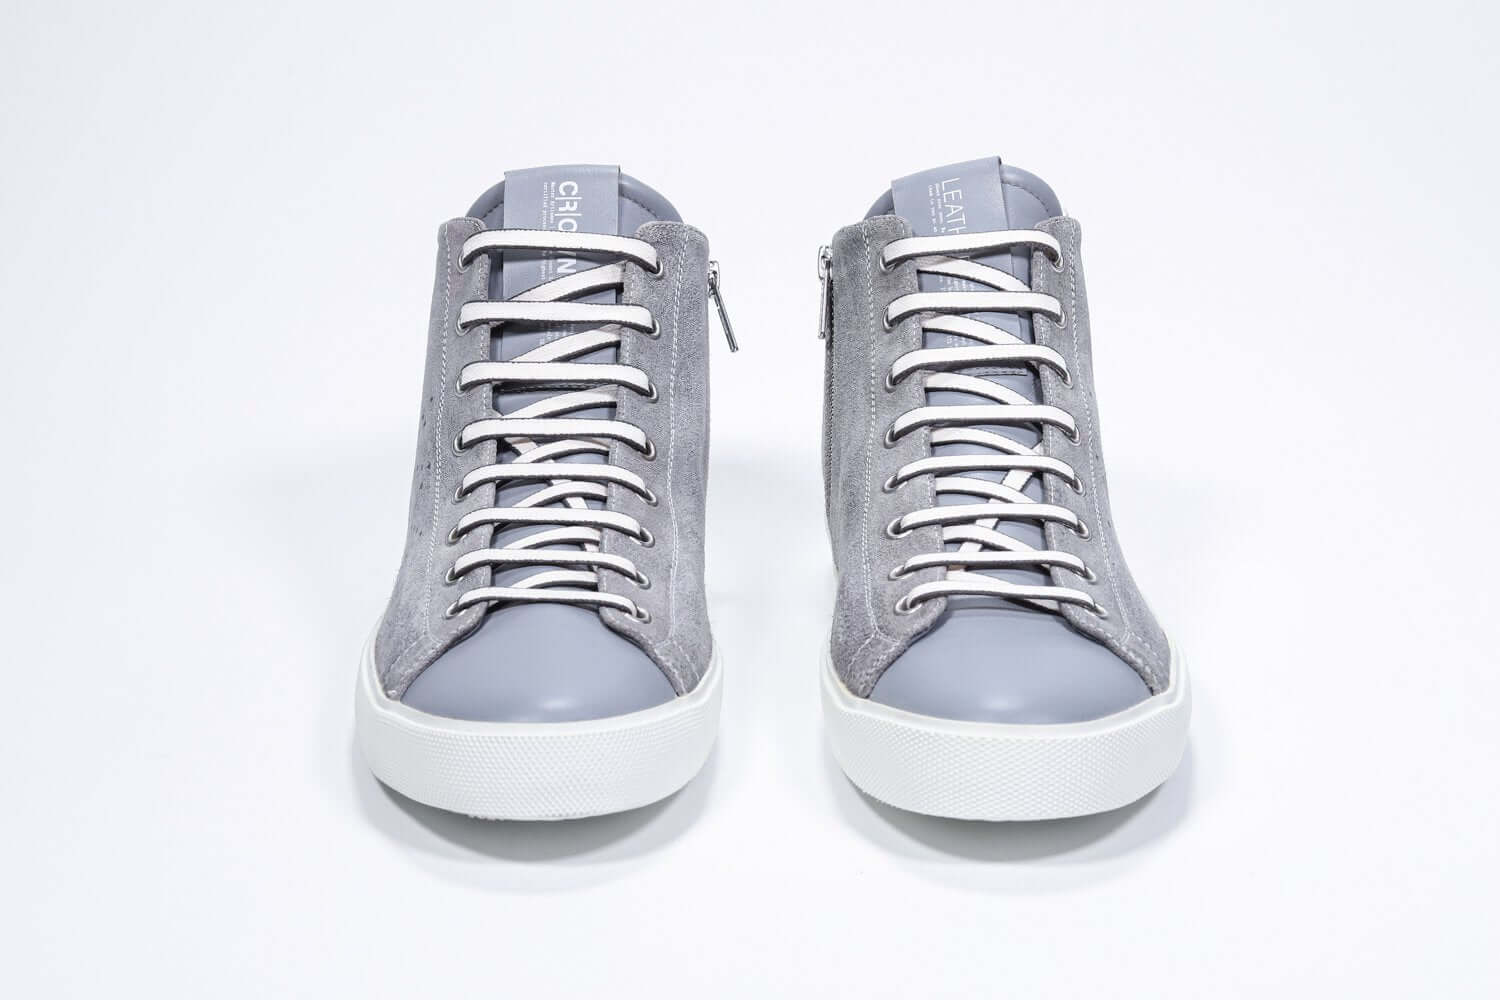 Vue de face du modèle mid top gris clair sneaker à tige entièrement en daim avec logo perforé, fermeture à glissière interne et semelle blanche.